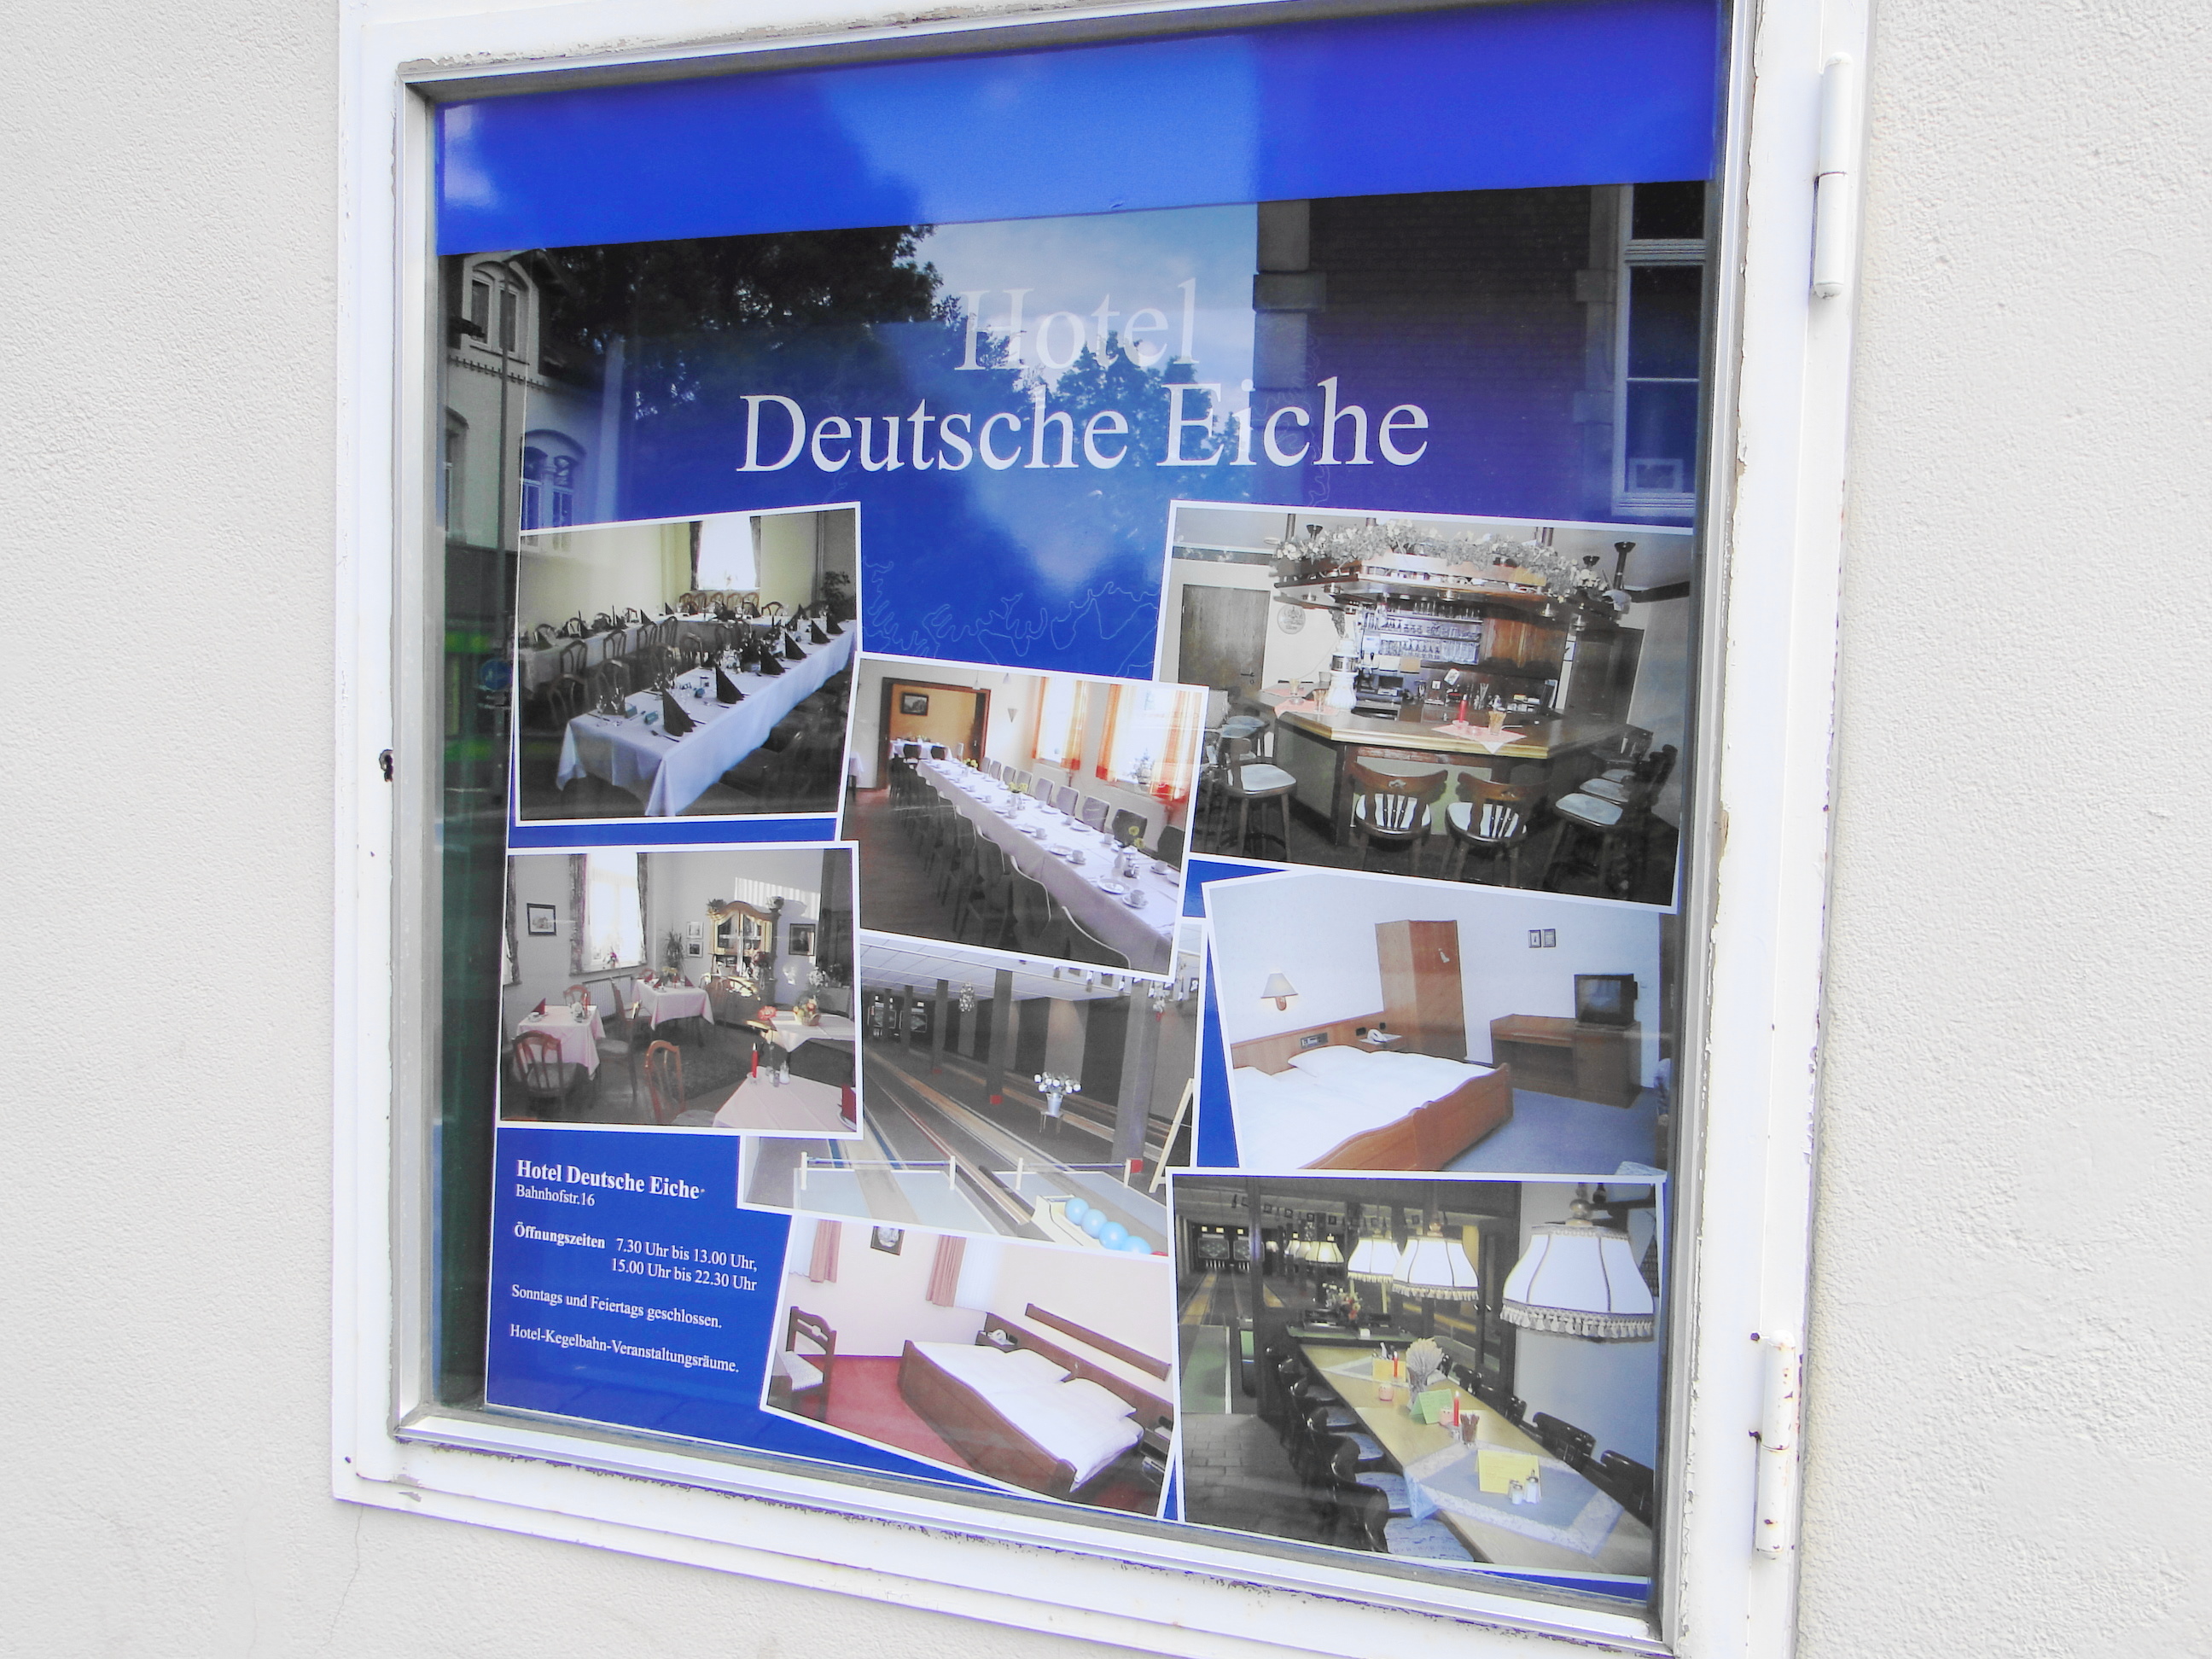 Hotel Deutsche Eiche in der Bahnhofstr. 16